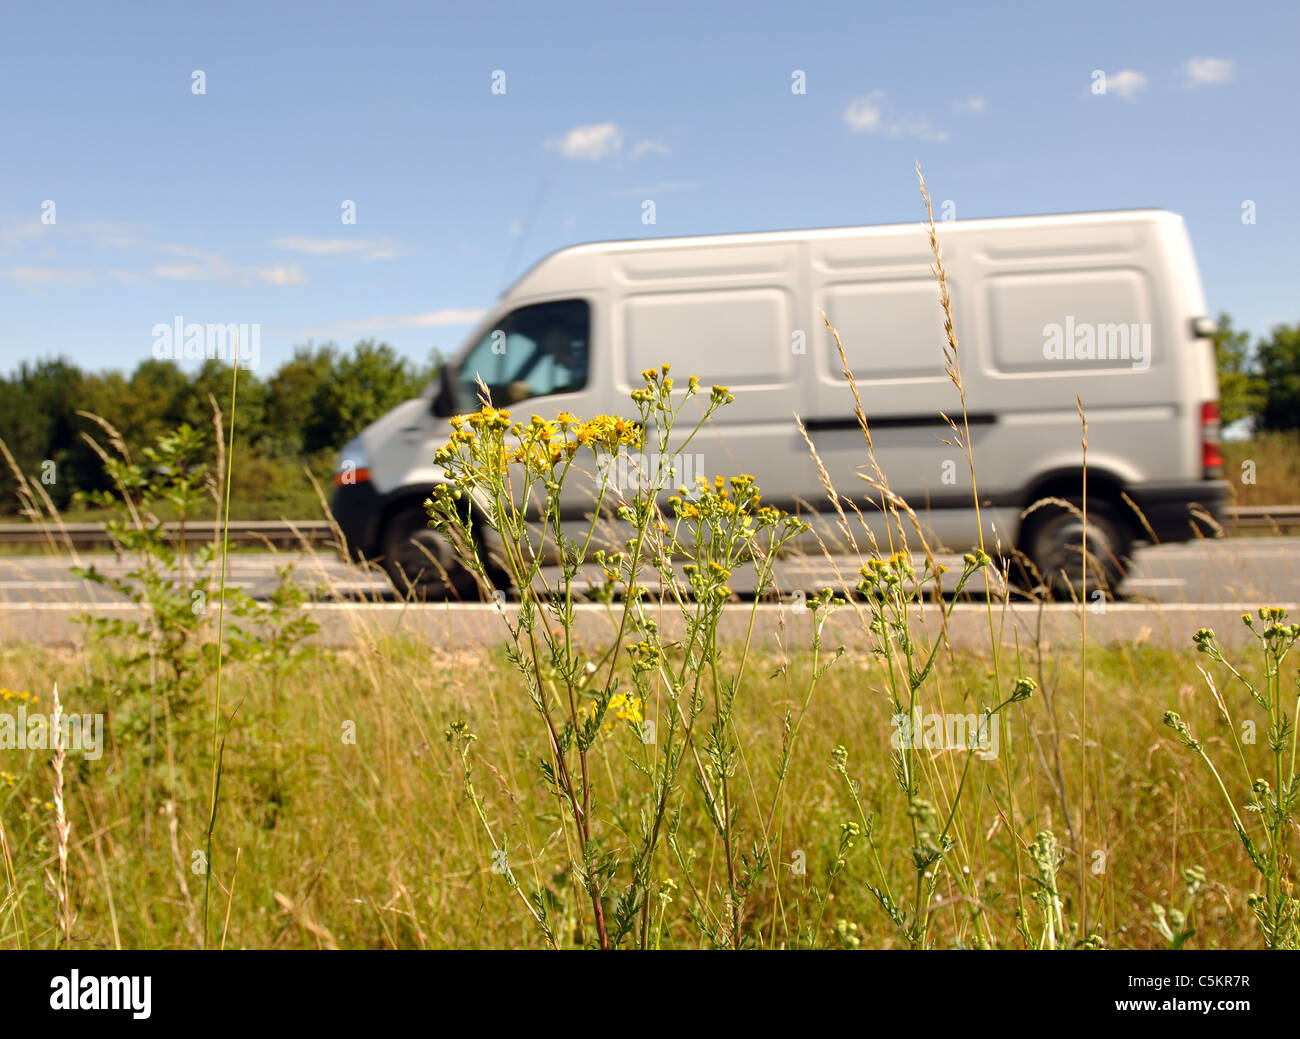 M40 motorway verge with white van passing, Warwickshire, UK Stock Photo